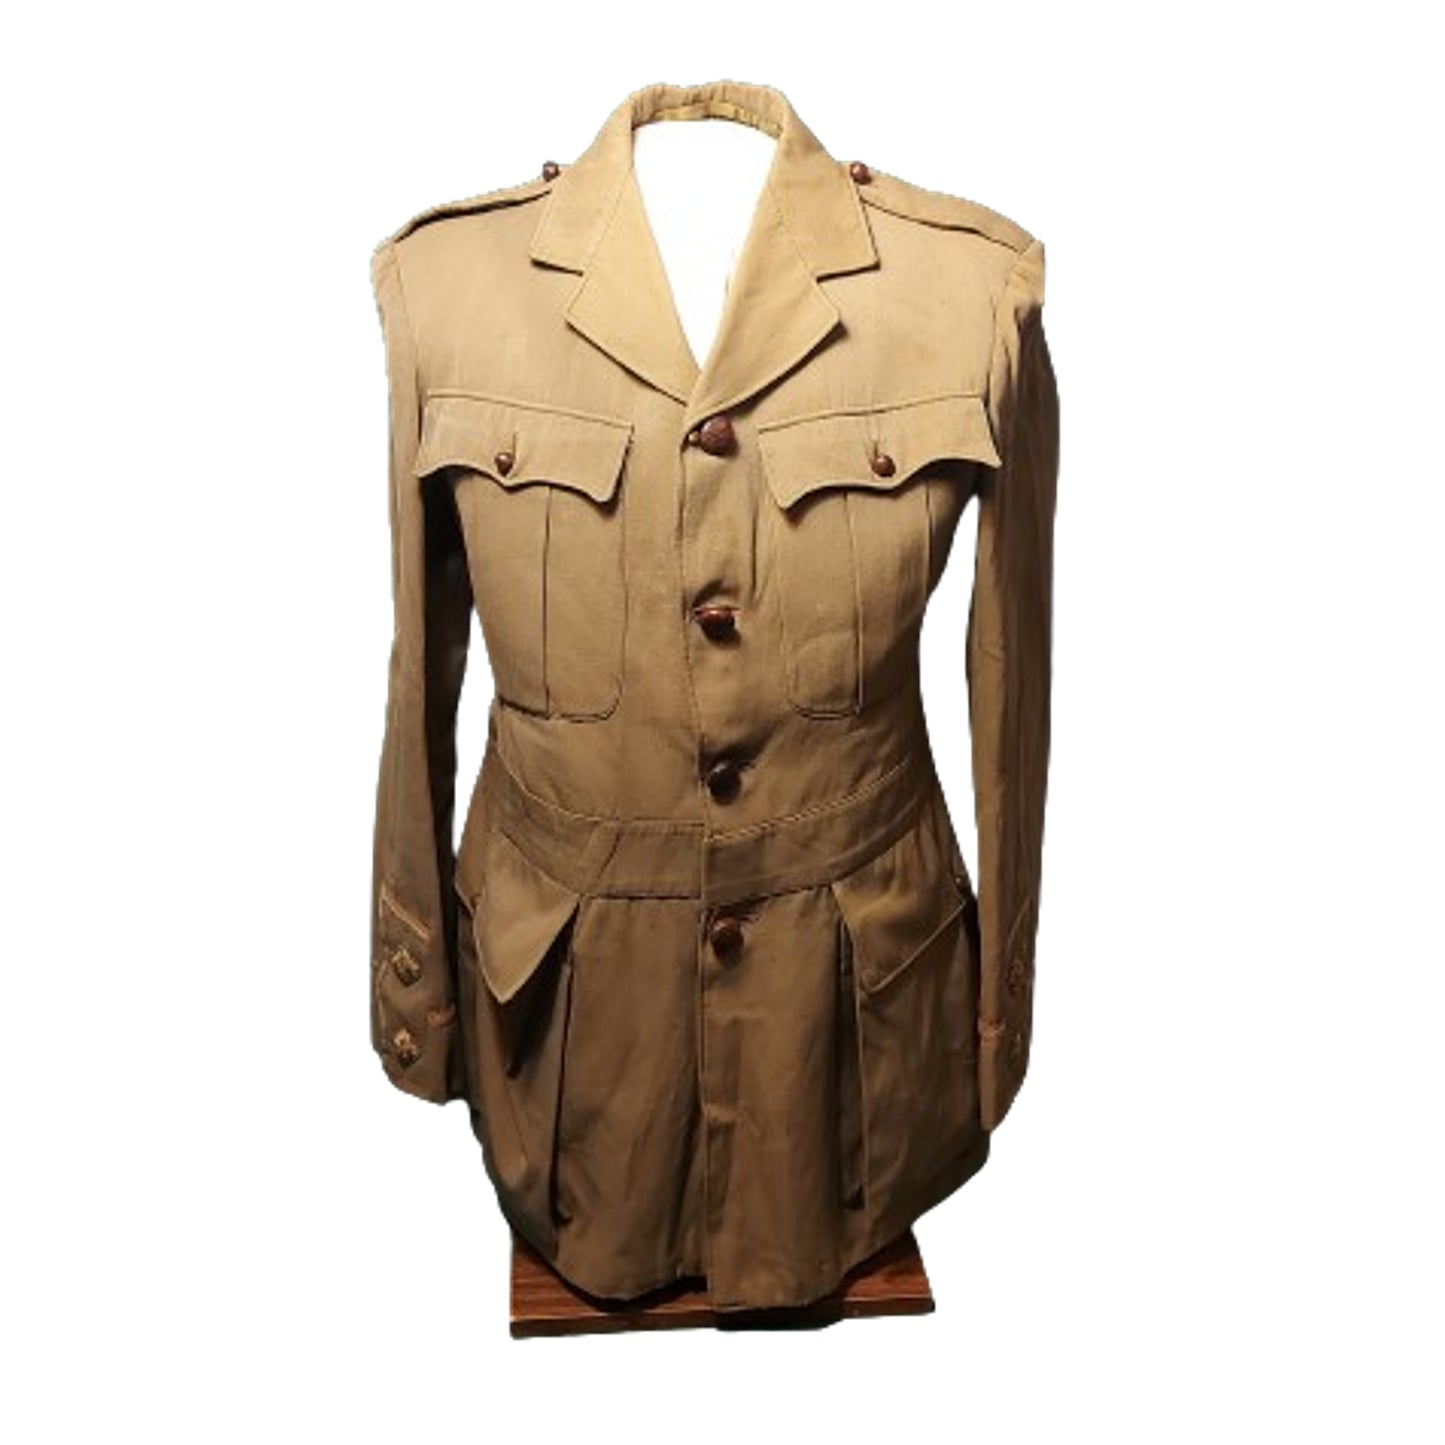 Pre-WW1 / WW1 Uniforms Of Lieut. James Philip Baker -27th Light Horse / 10th Battalion